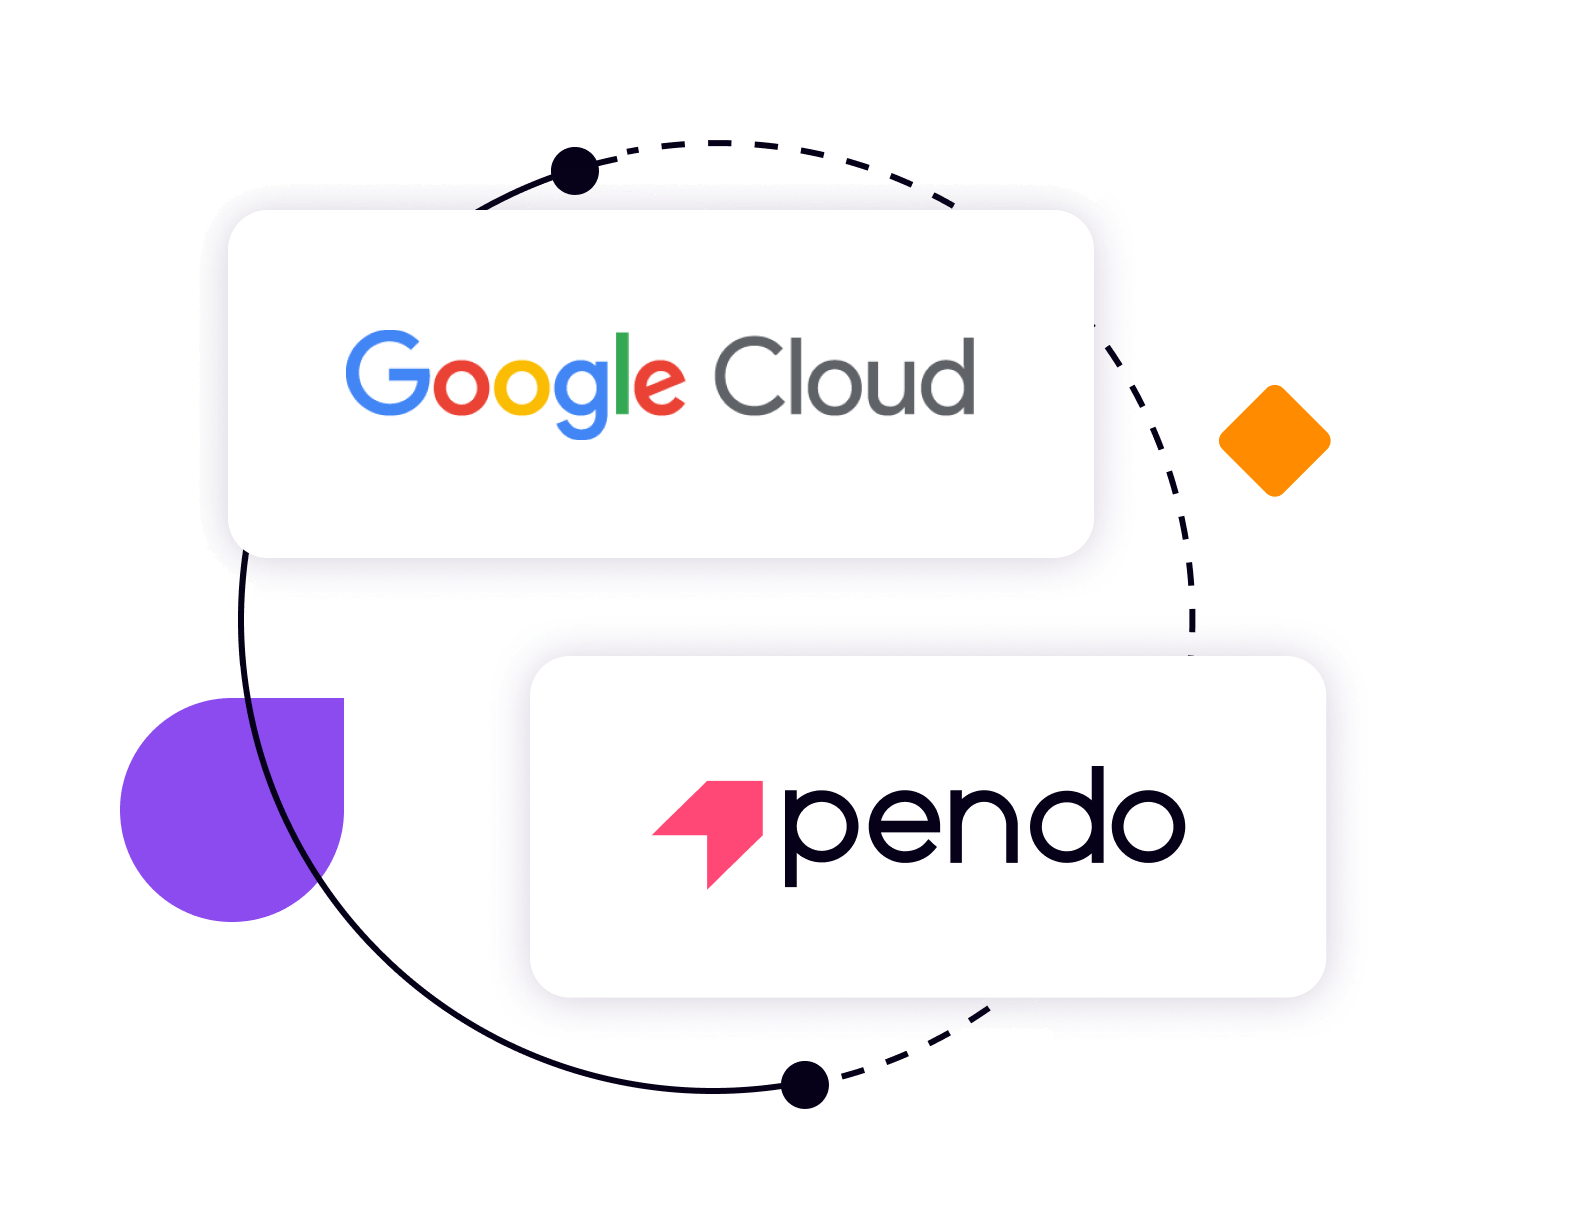 Google Cloud + Pendo